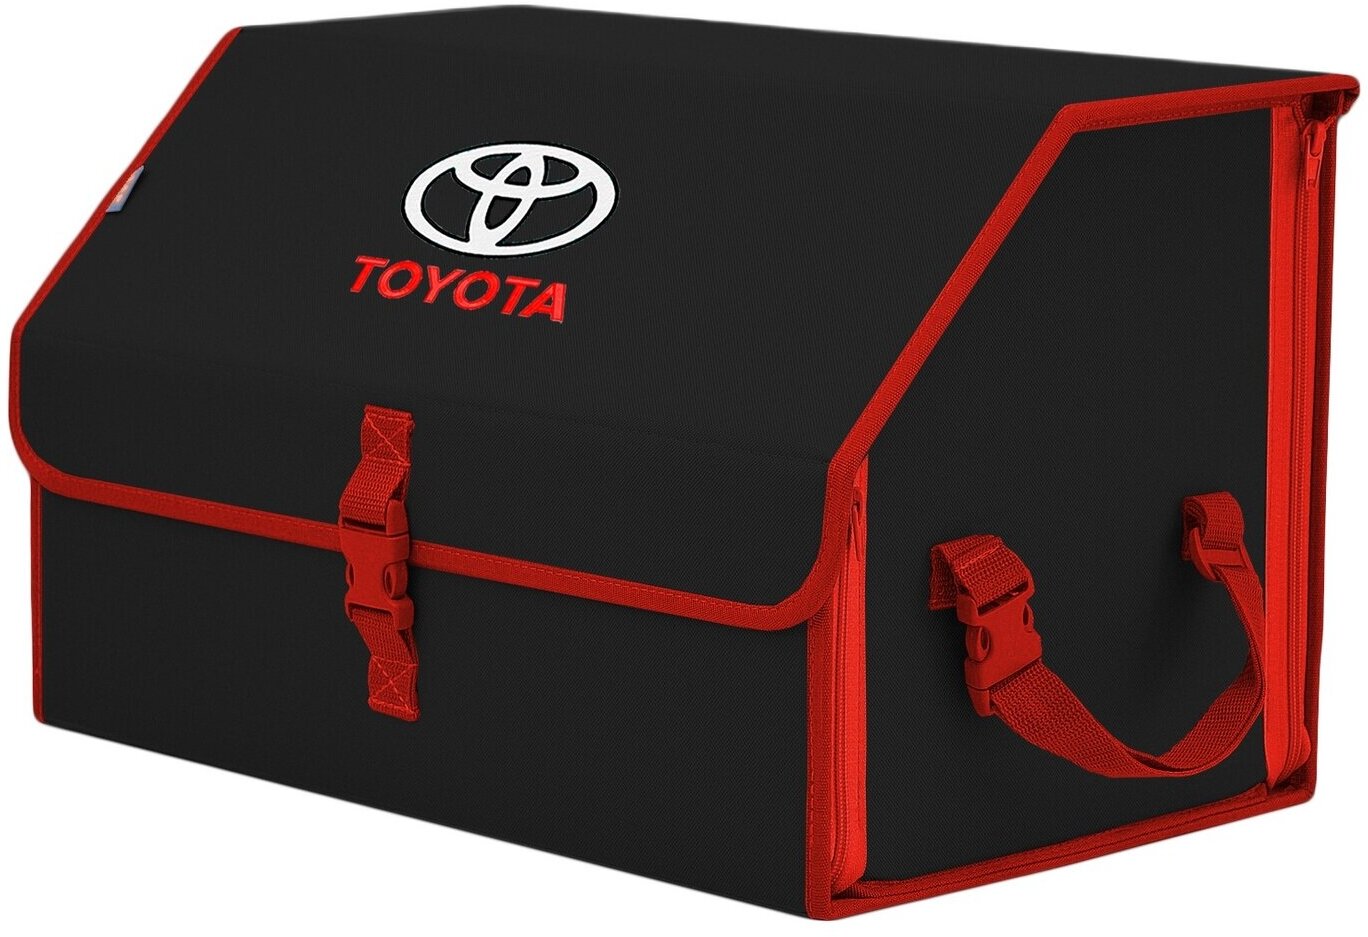 Органайзер-саквояж в багажник "Союз" (размер L). Цвет: черный с красной окантовкой и вышивкой Toyota (Тойота).